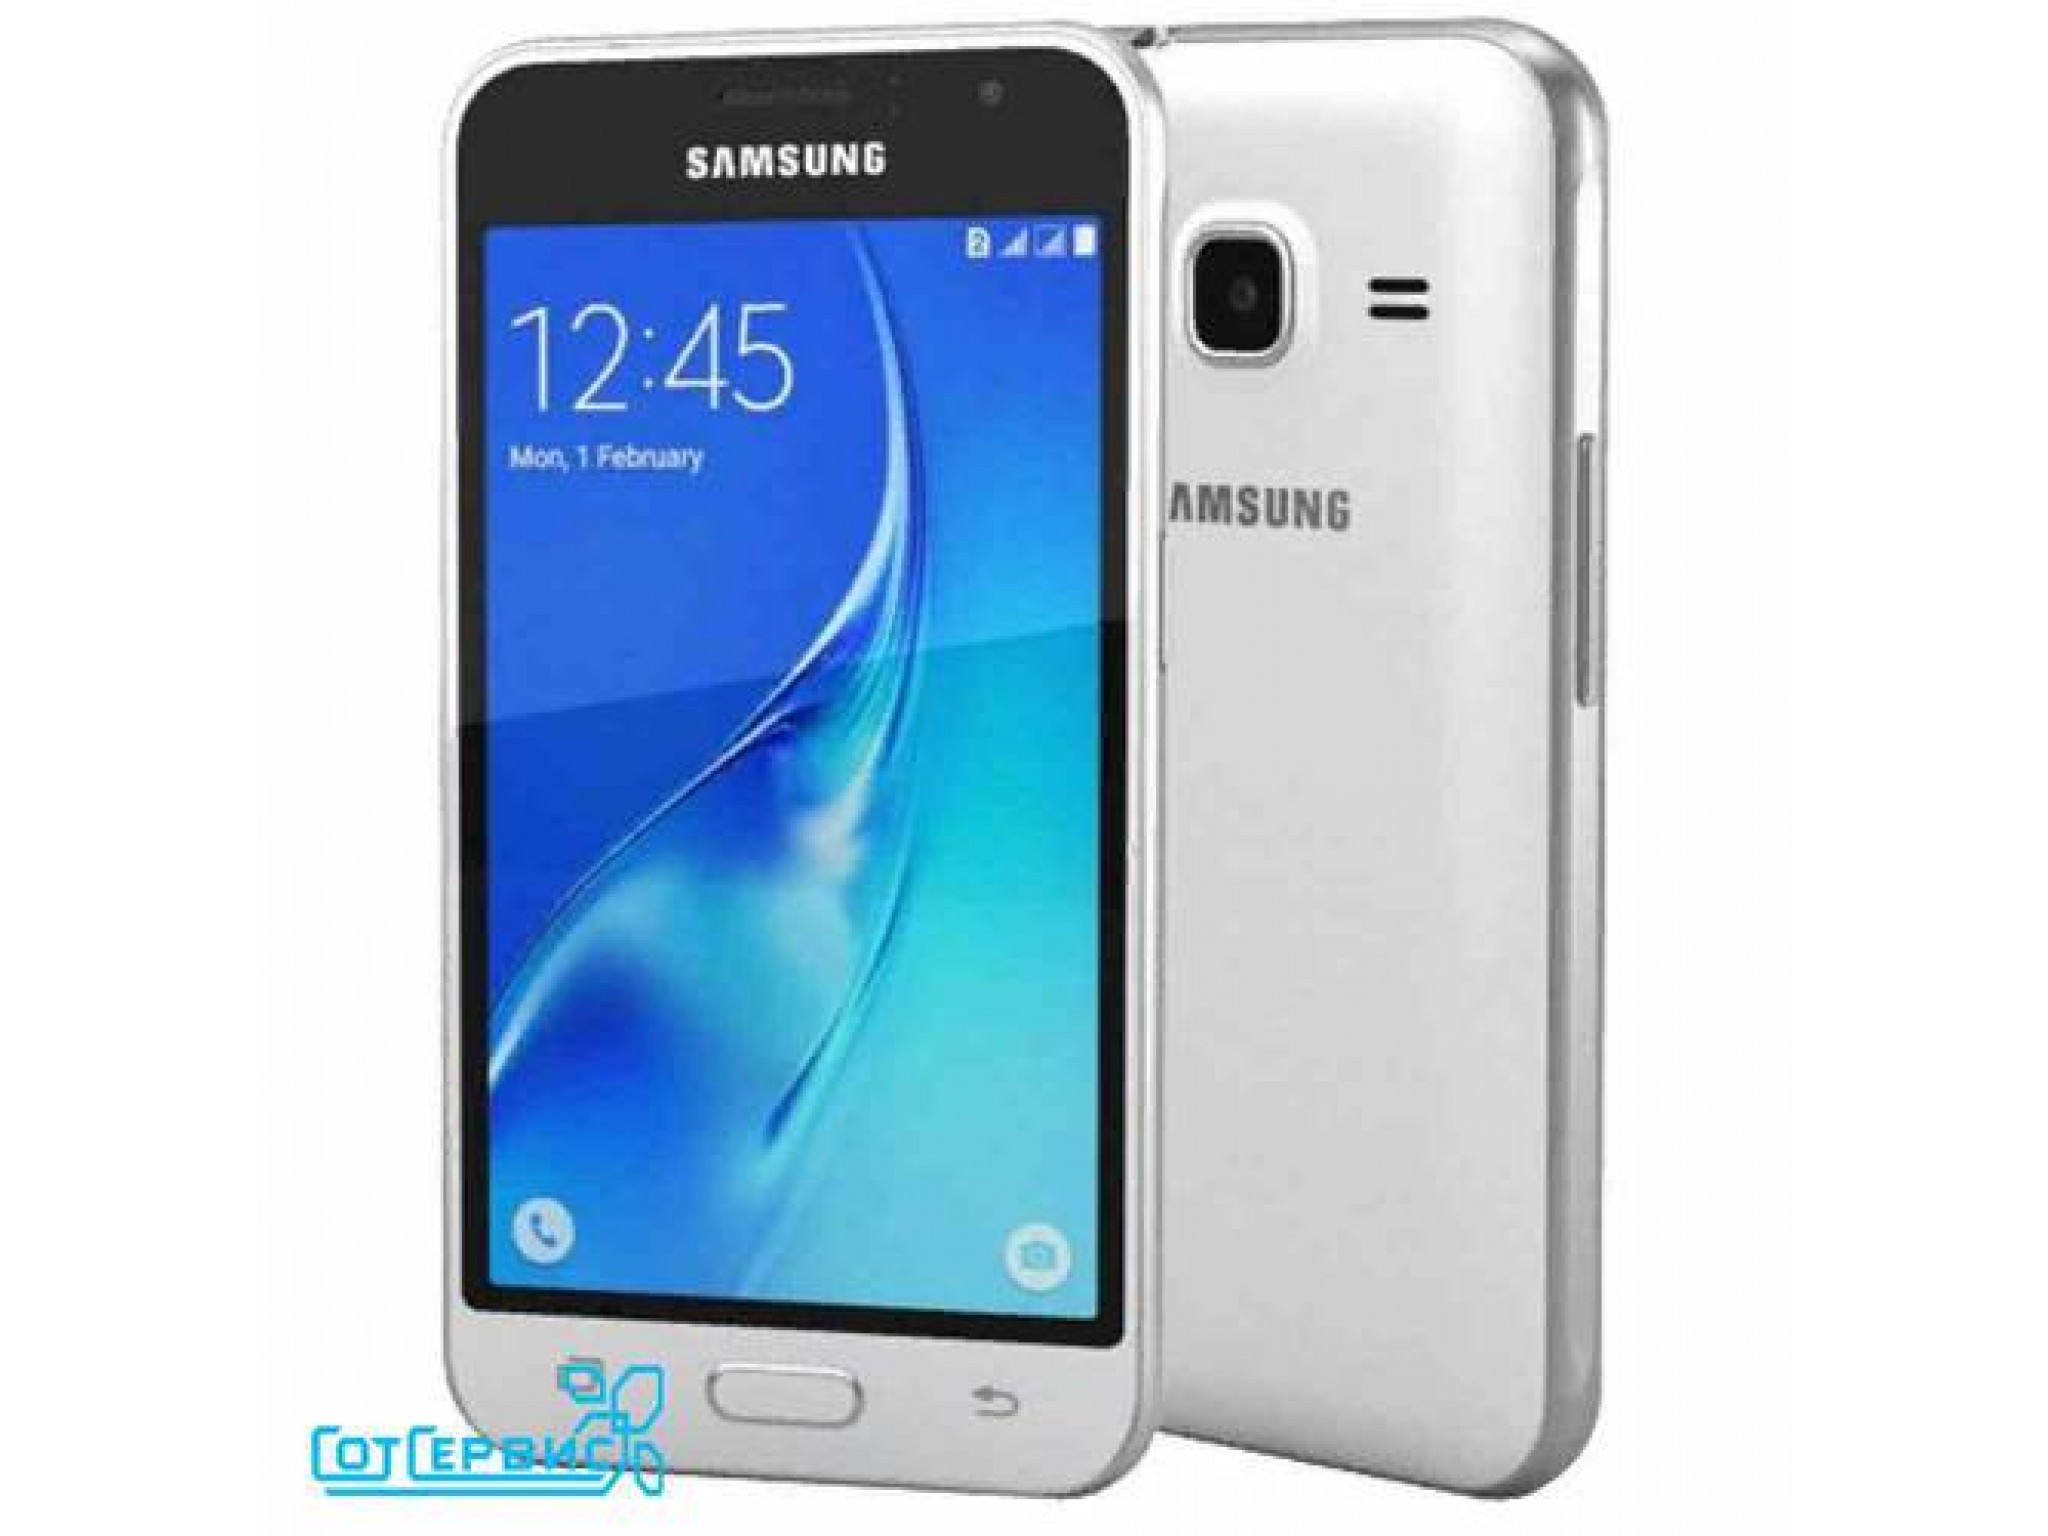 Samsung galaxy mini j105h. Samsung j1 6. Samsung Galaxy j1 Mini SM-j105h. Samsung Galaxy j1 2016. Samsung Galaxy j1 2016 SM-j120f.